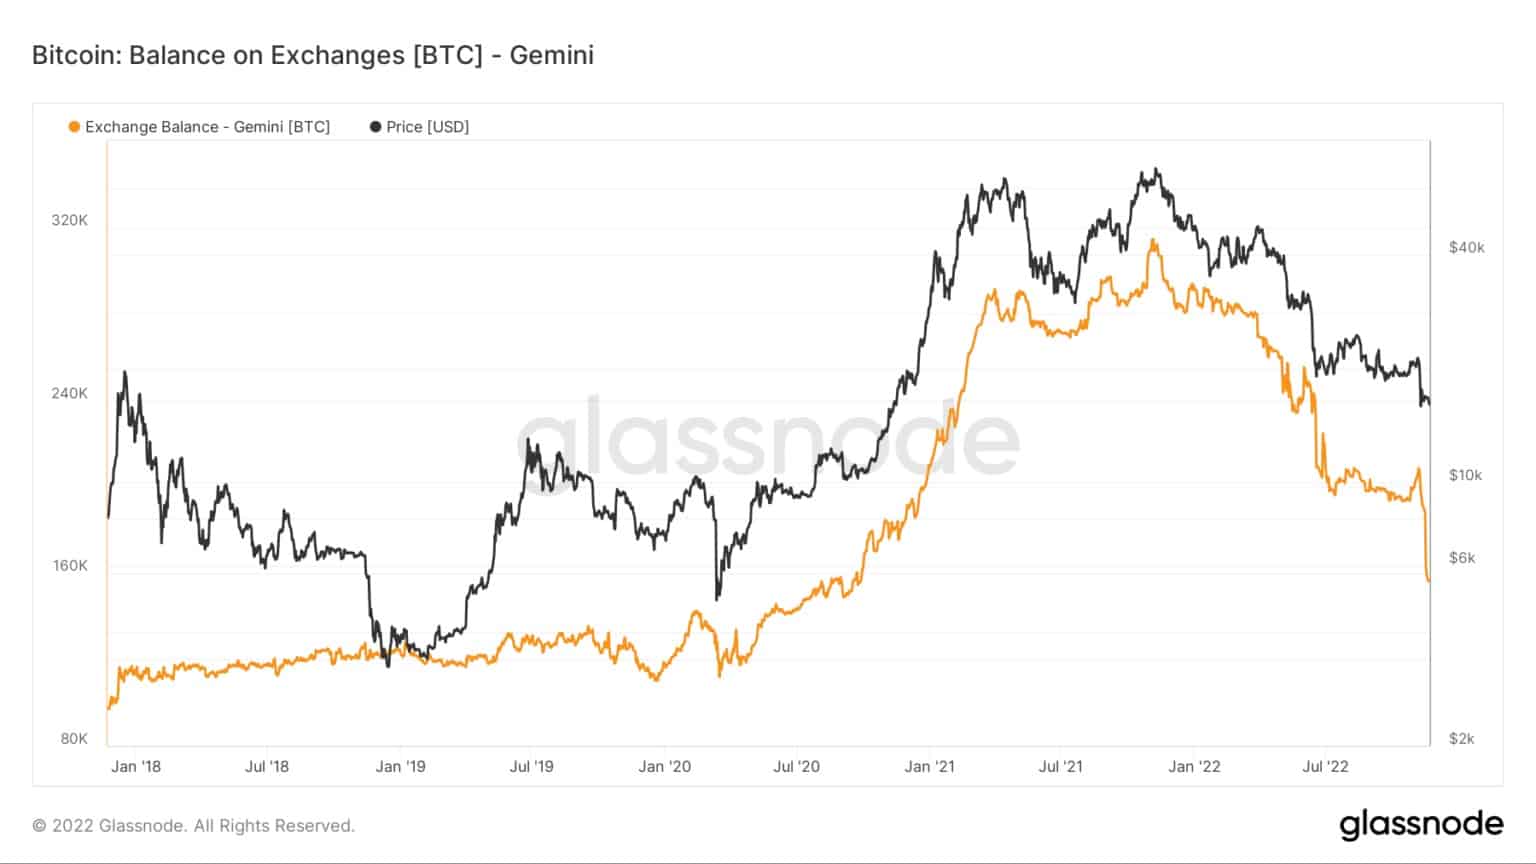 Graf zobrazující zůstatky Bitcoinů na burze Gemini v letech 2016 až 2022 (Zdroj: Glassnode)